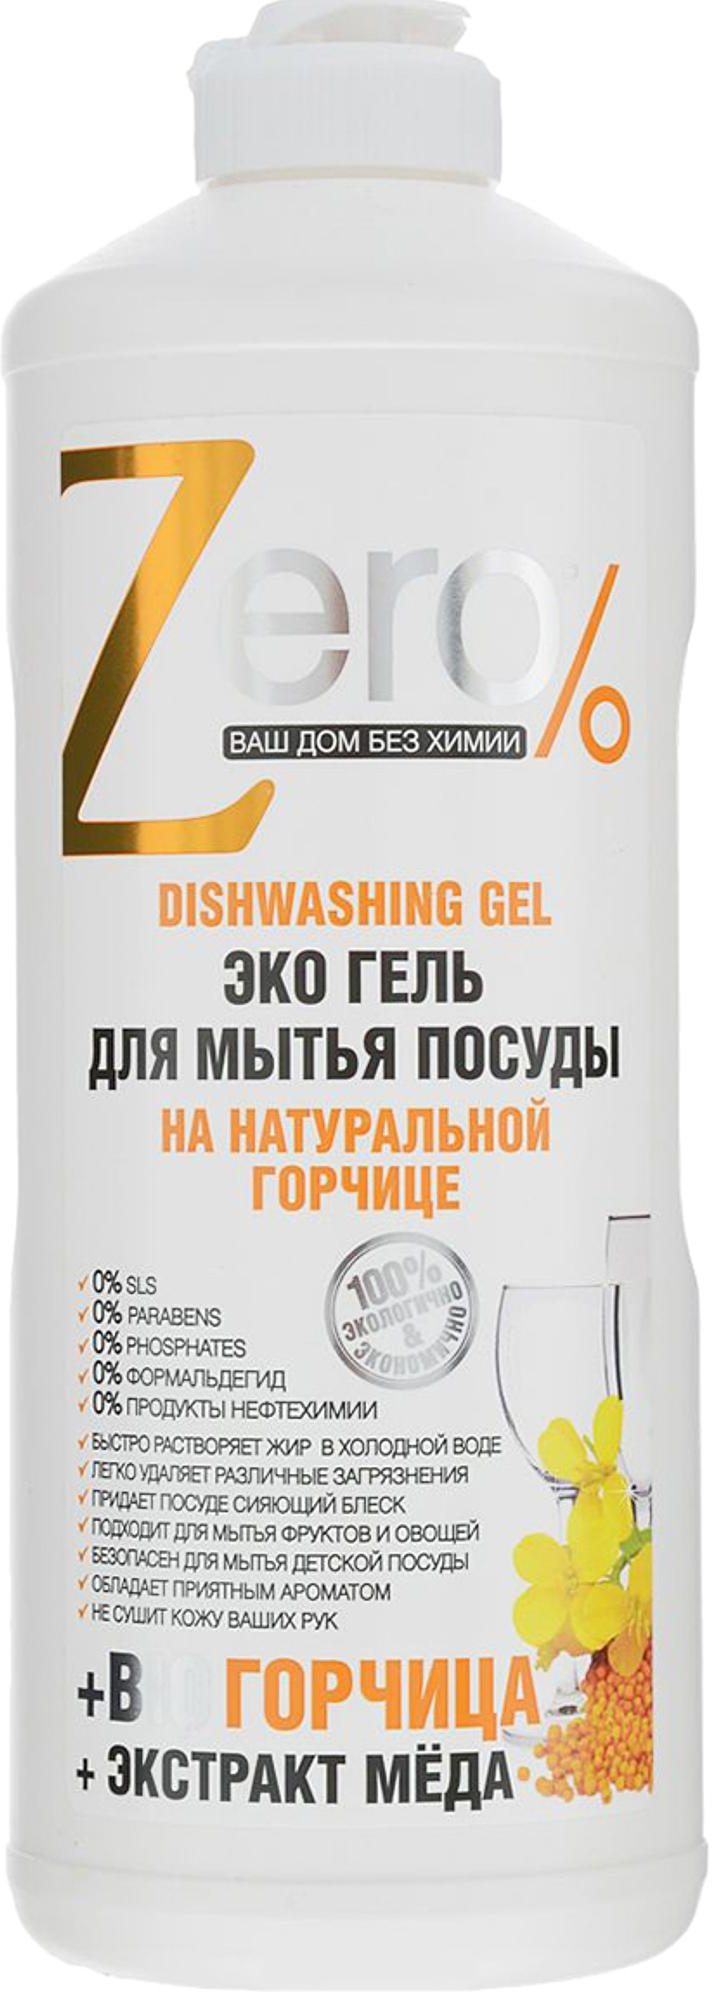 Zero Эко гель для мытья посуды на натуральной горчице с экстрактом меда 500 мл